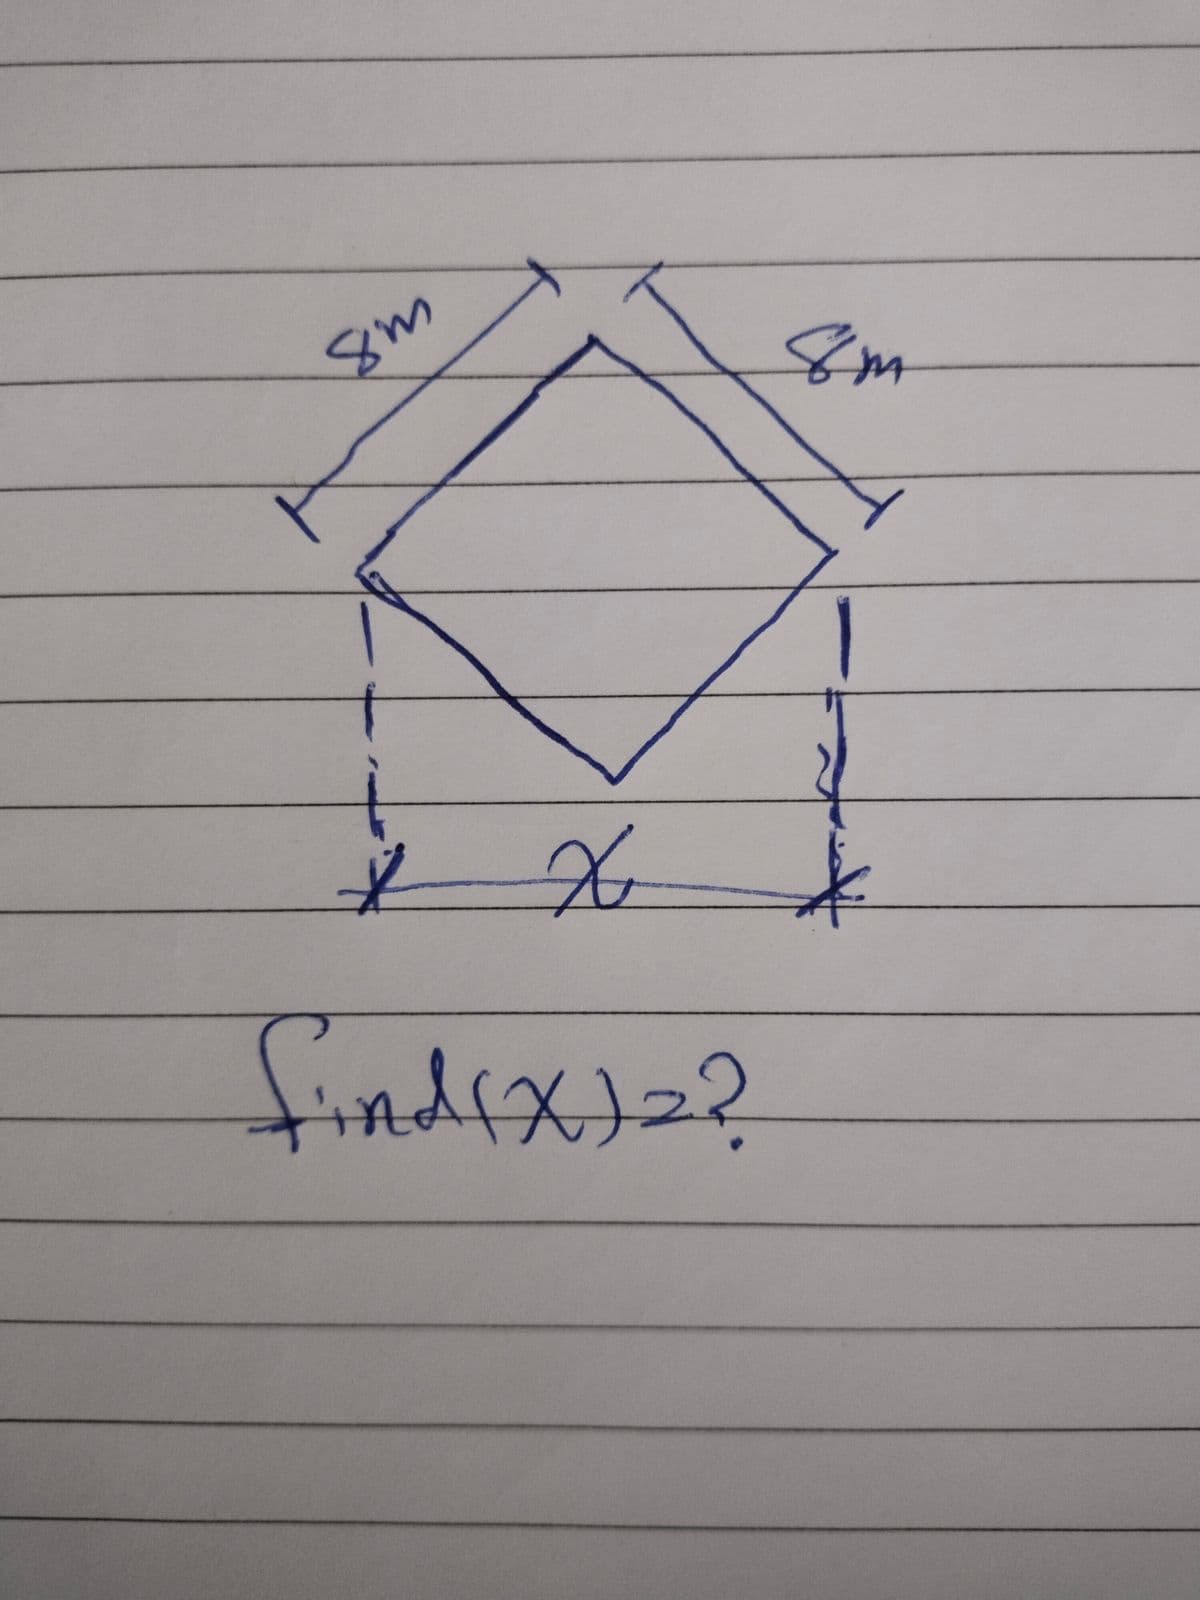 4
8m
L
X
find(X)2?
Sm
/